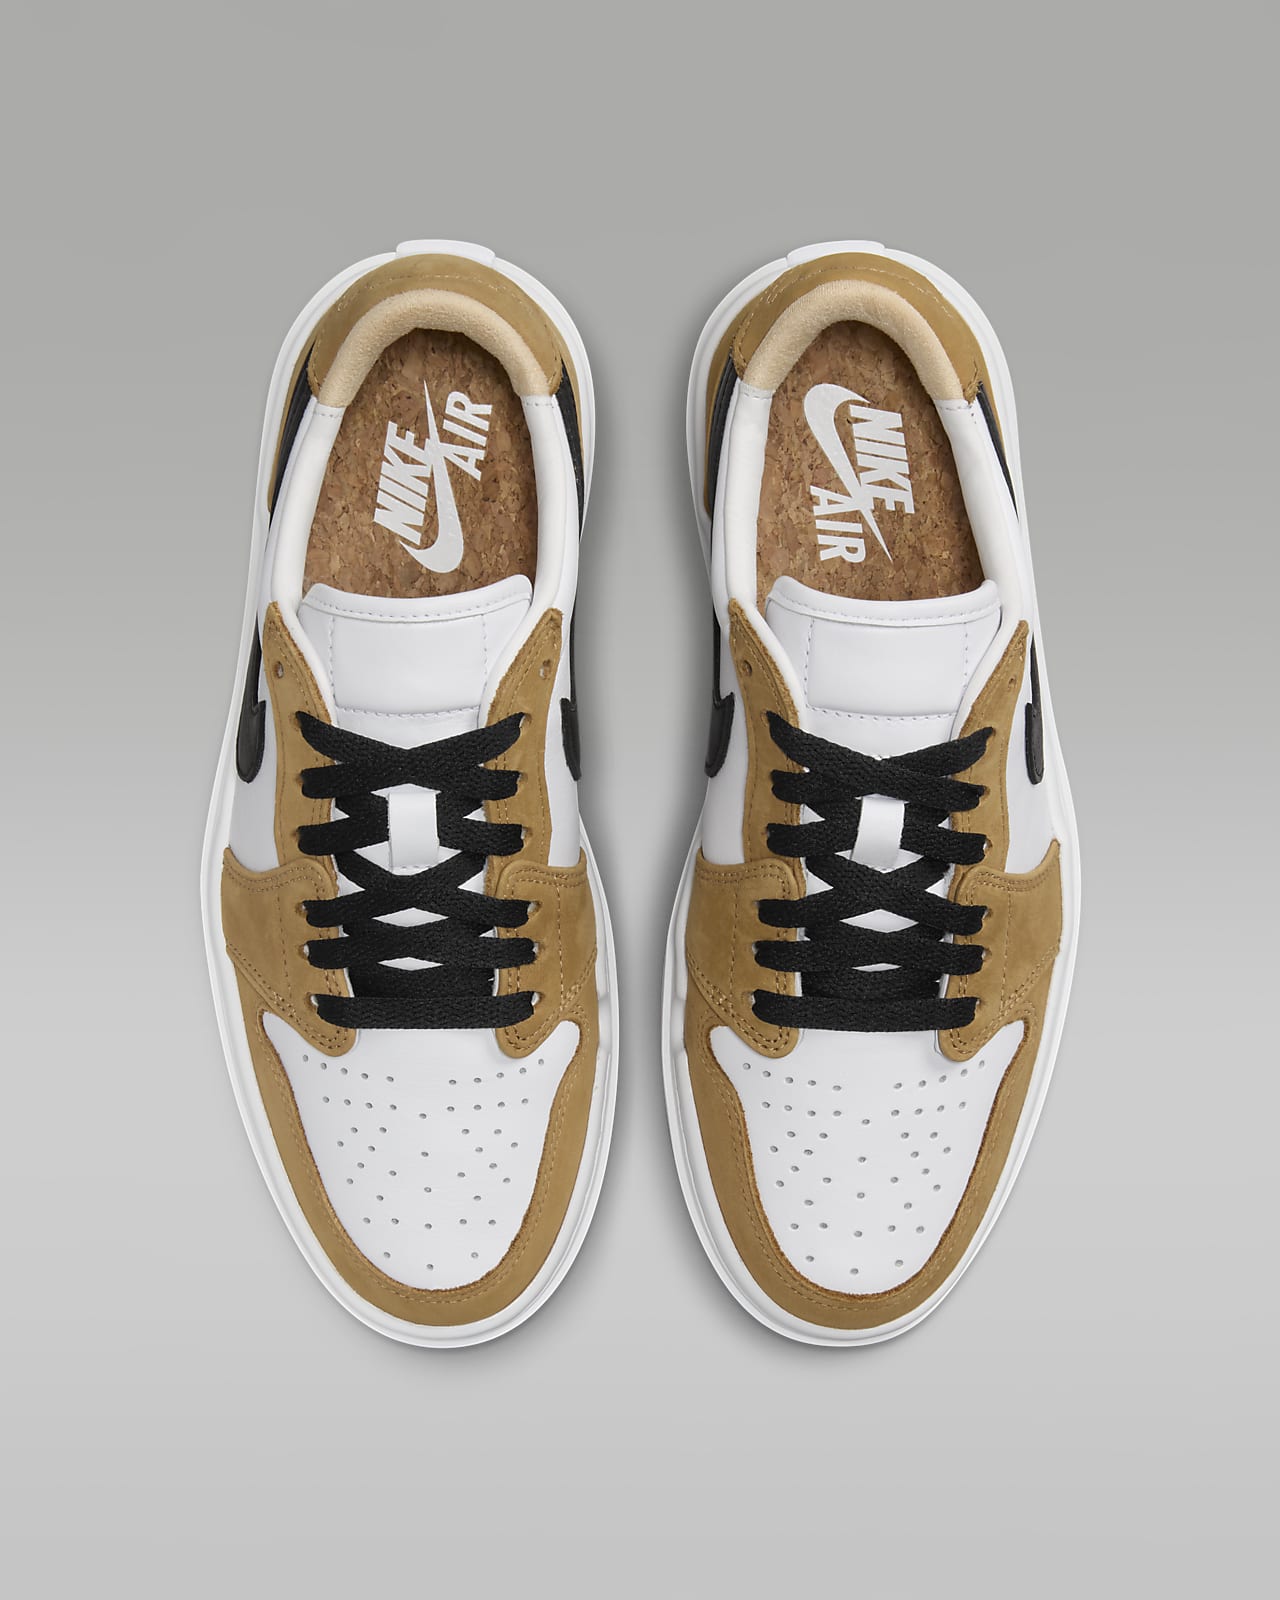 Nike Air Jordan 1 Low LV8D sneakers for Women - Beige in UAE